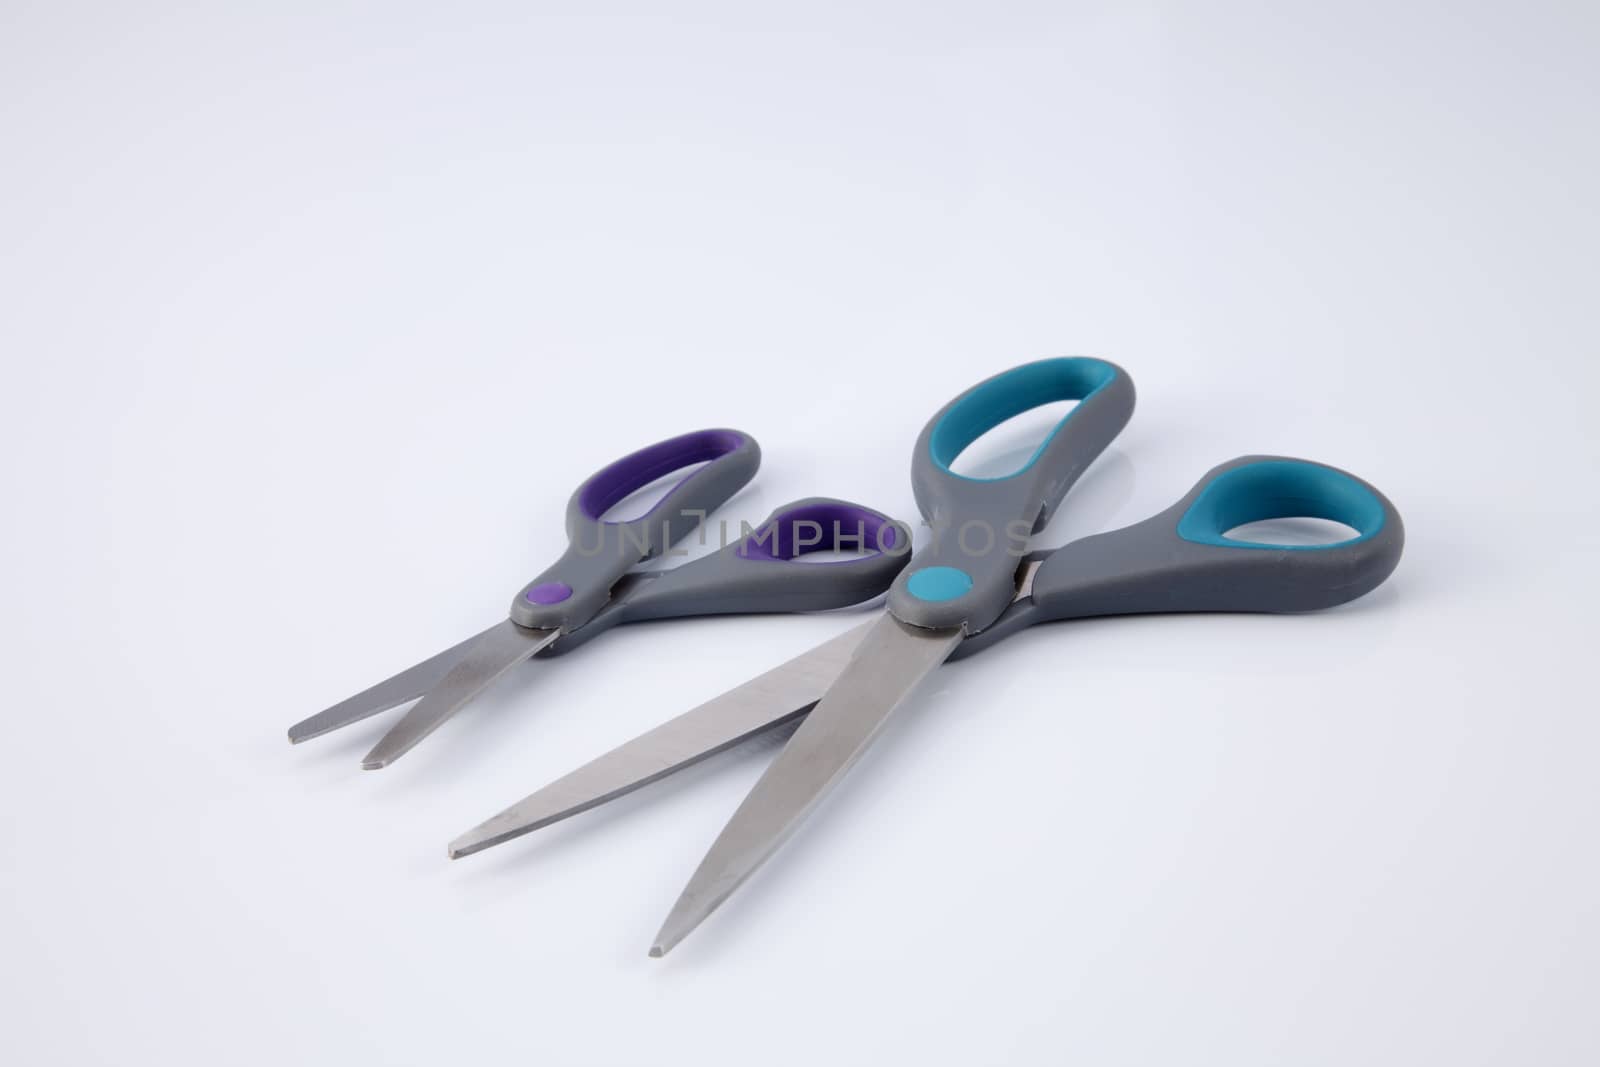 scissors by eskaylim